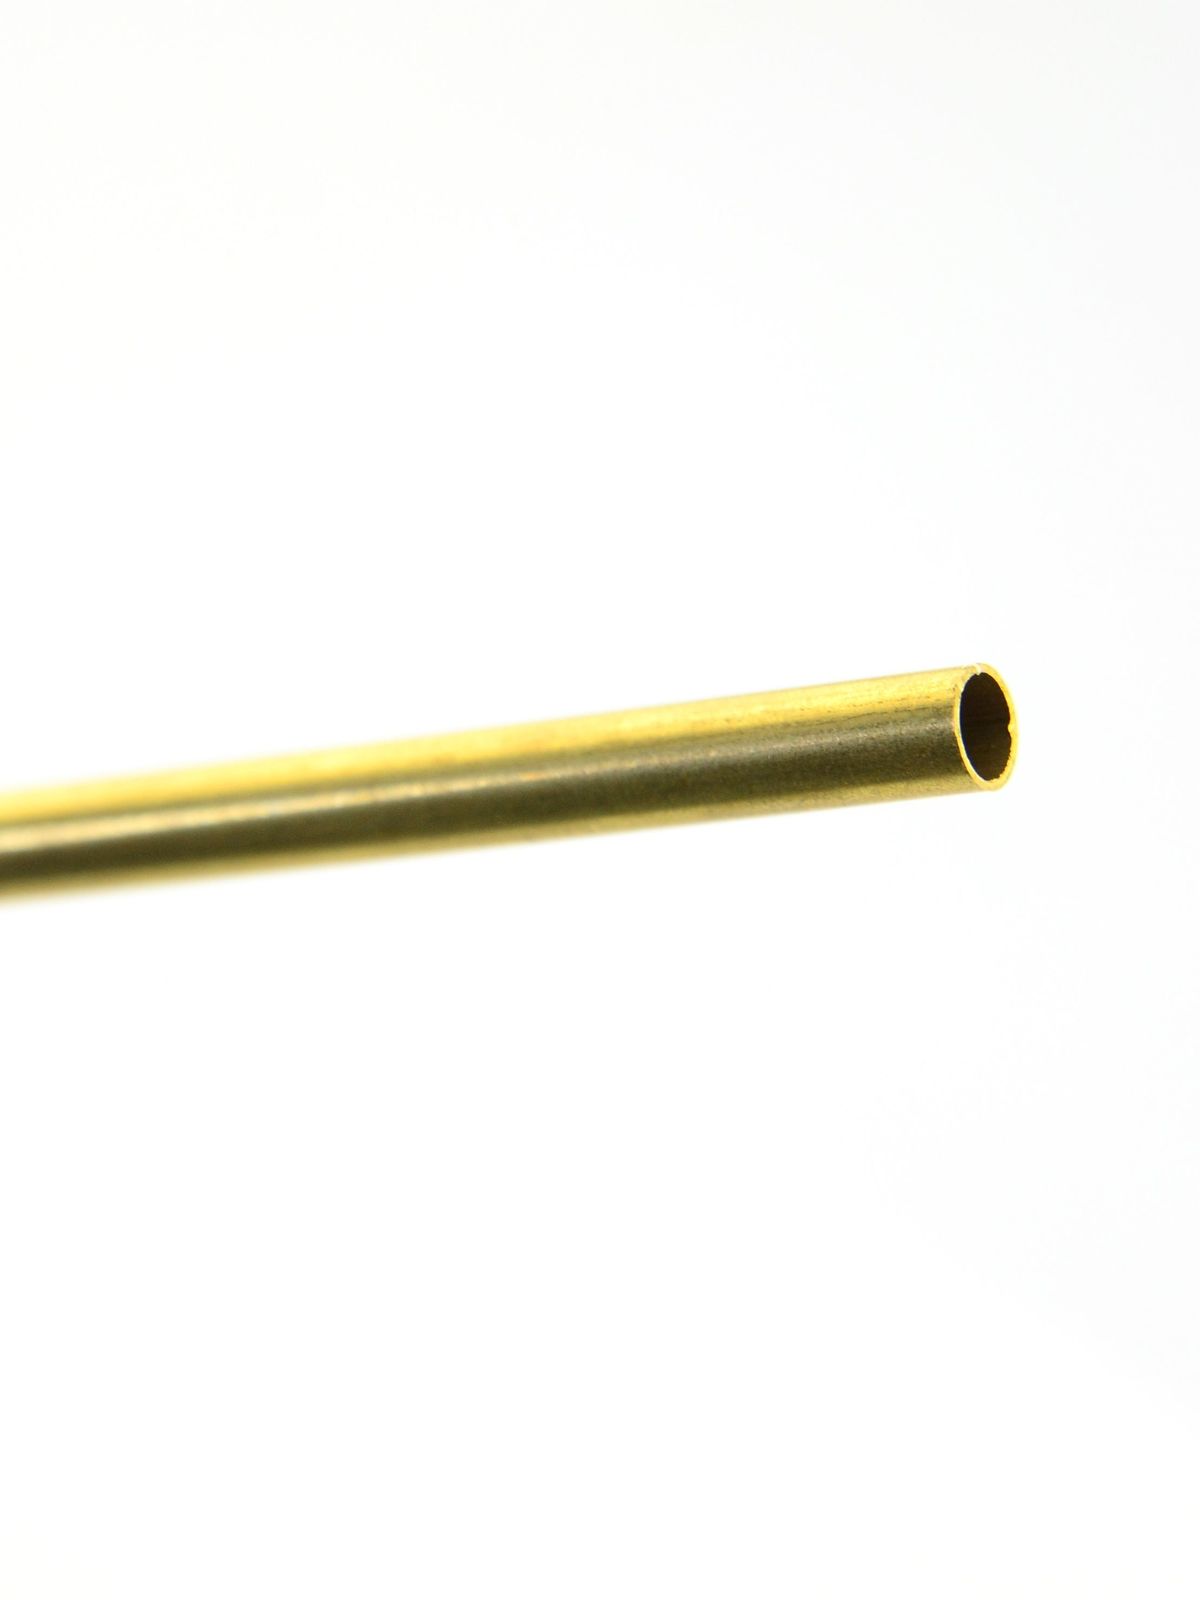 Metal Tubing Brass 7 32 In. X .014 In. X 36 In. Tubing